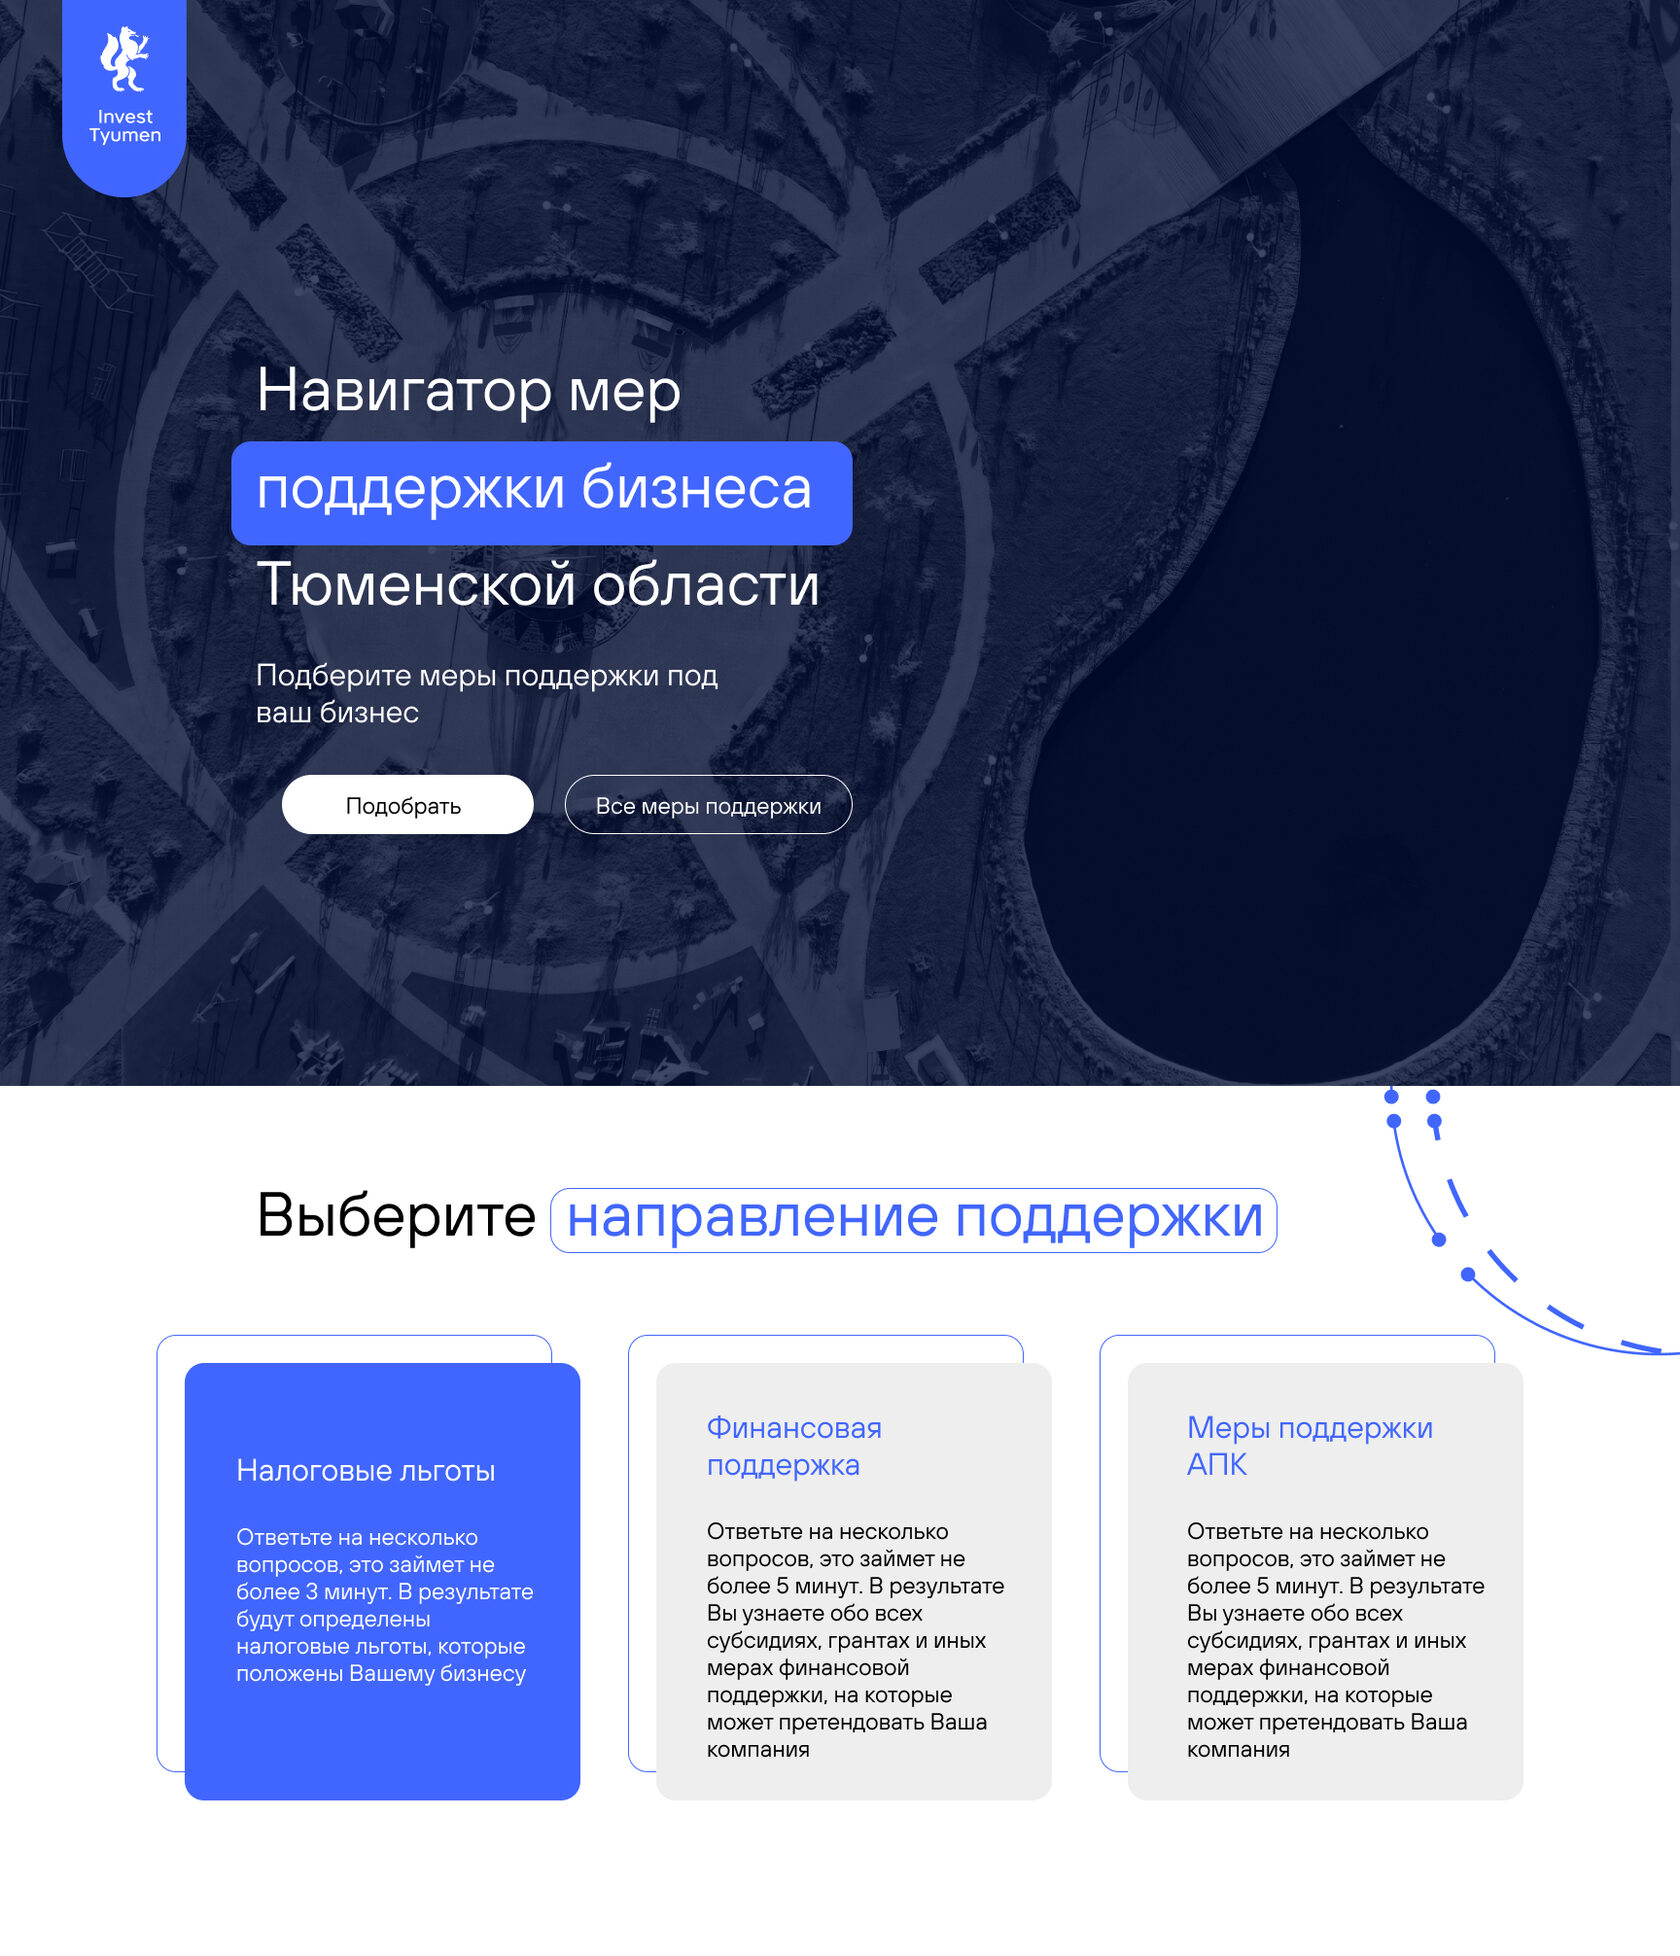 Дизайн сайта навигатора поддержки бизнеса тюменской области